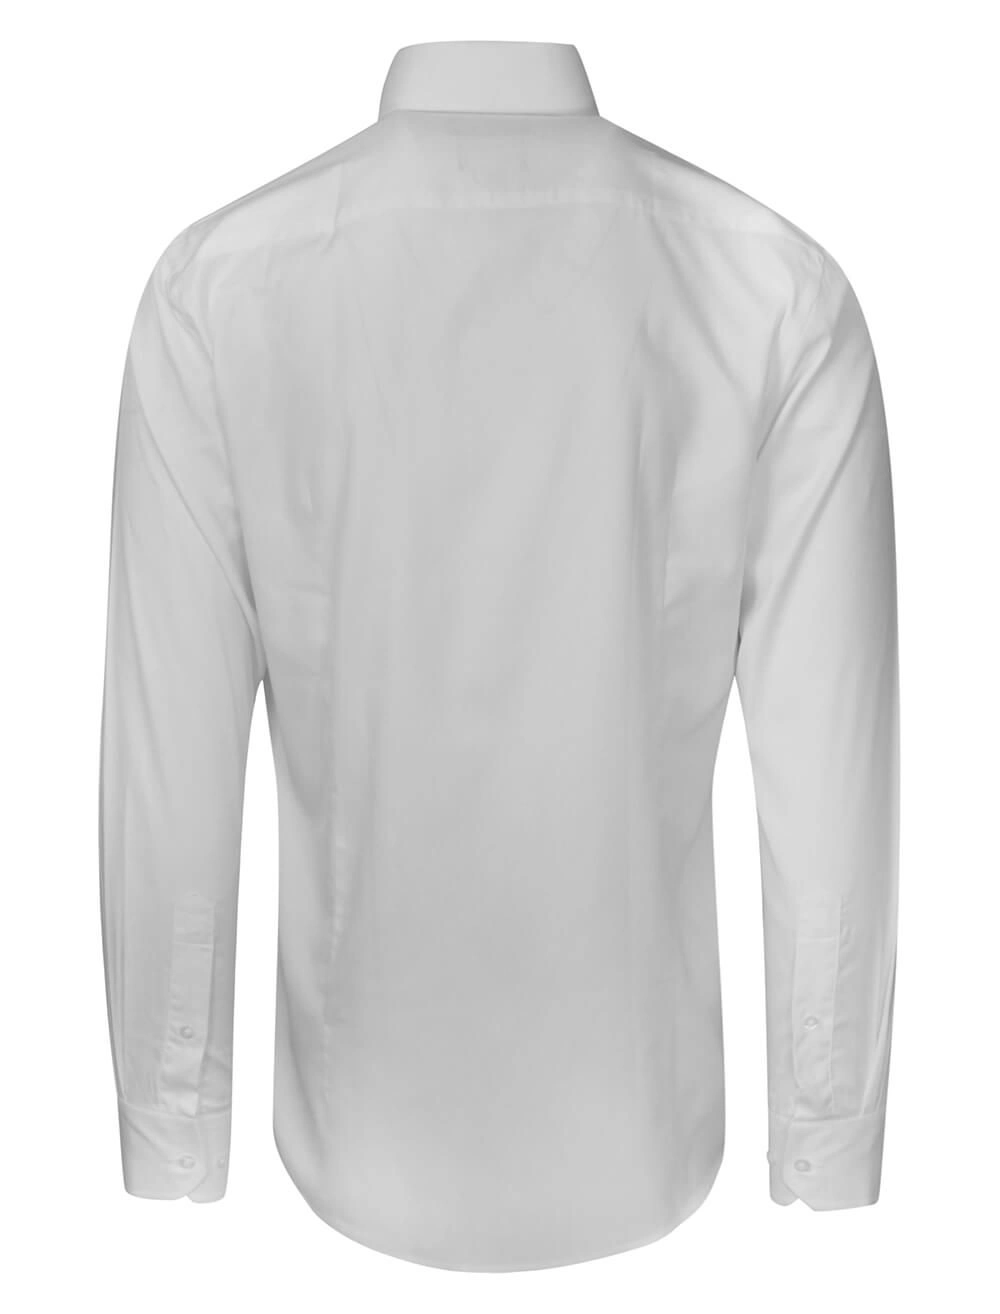 Koszula Męska, Biała Elegancka, Wizytowa z Długim Rękawem, 100% Bawełna, Taliowana -CHIAO